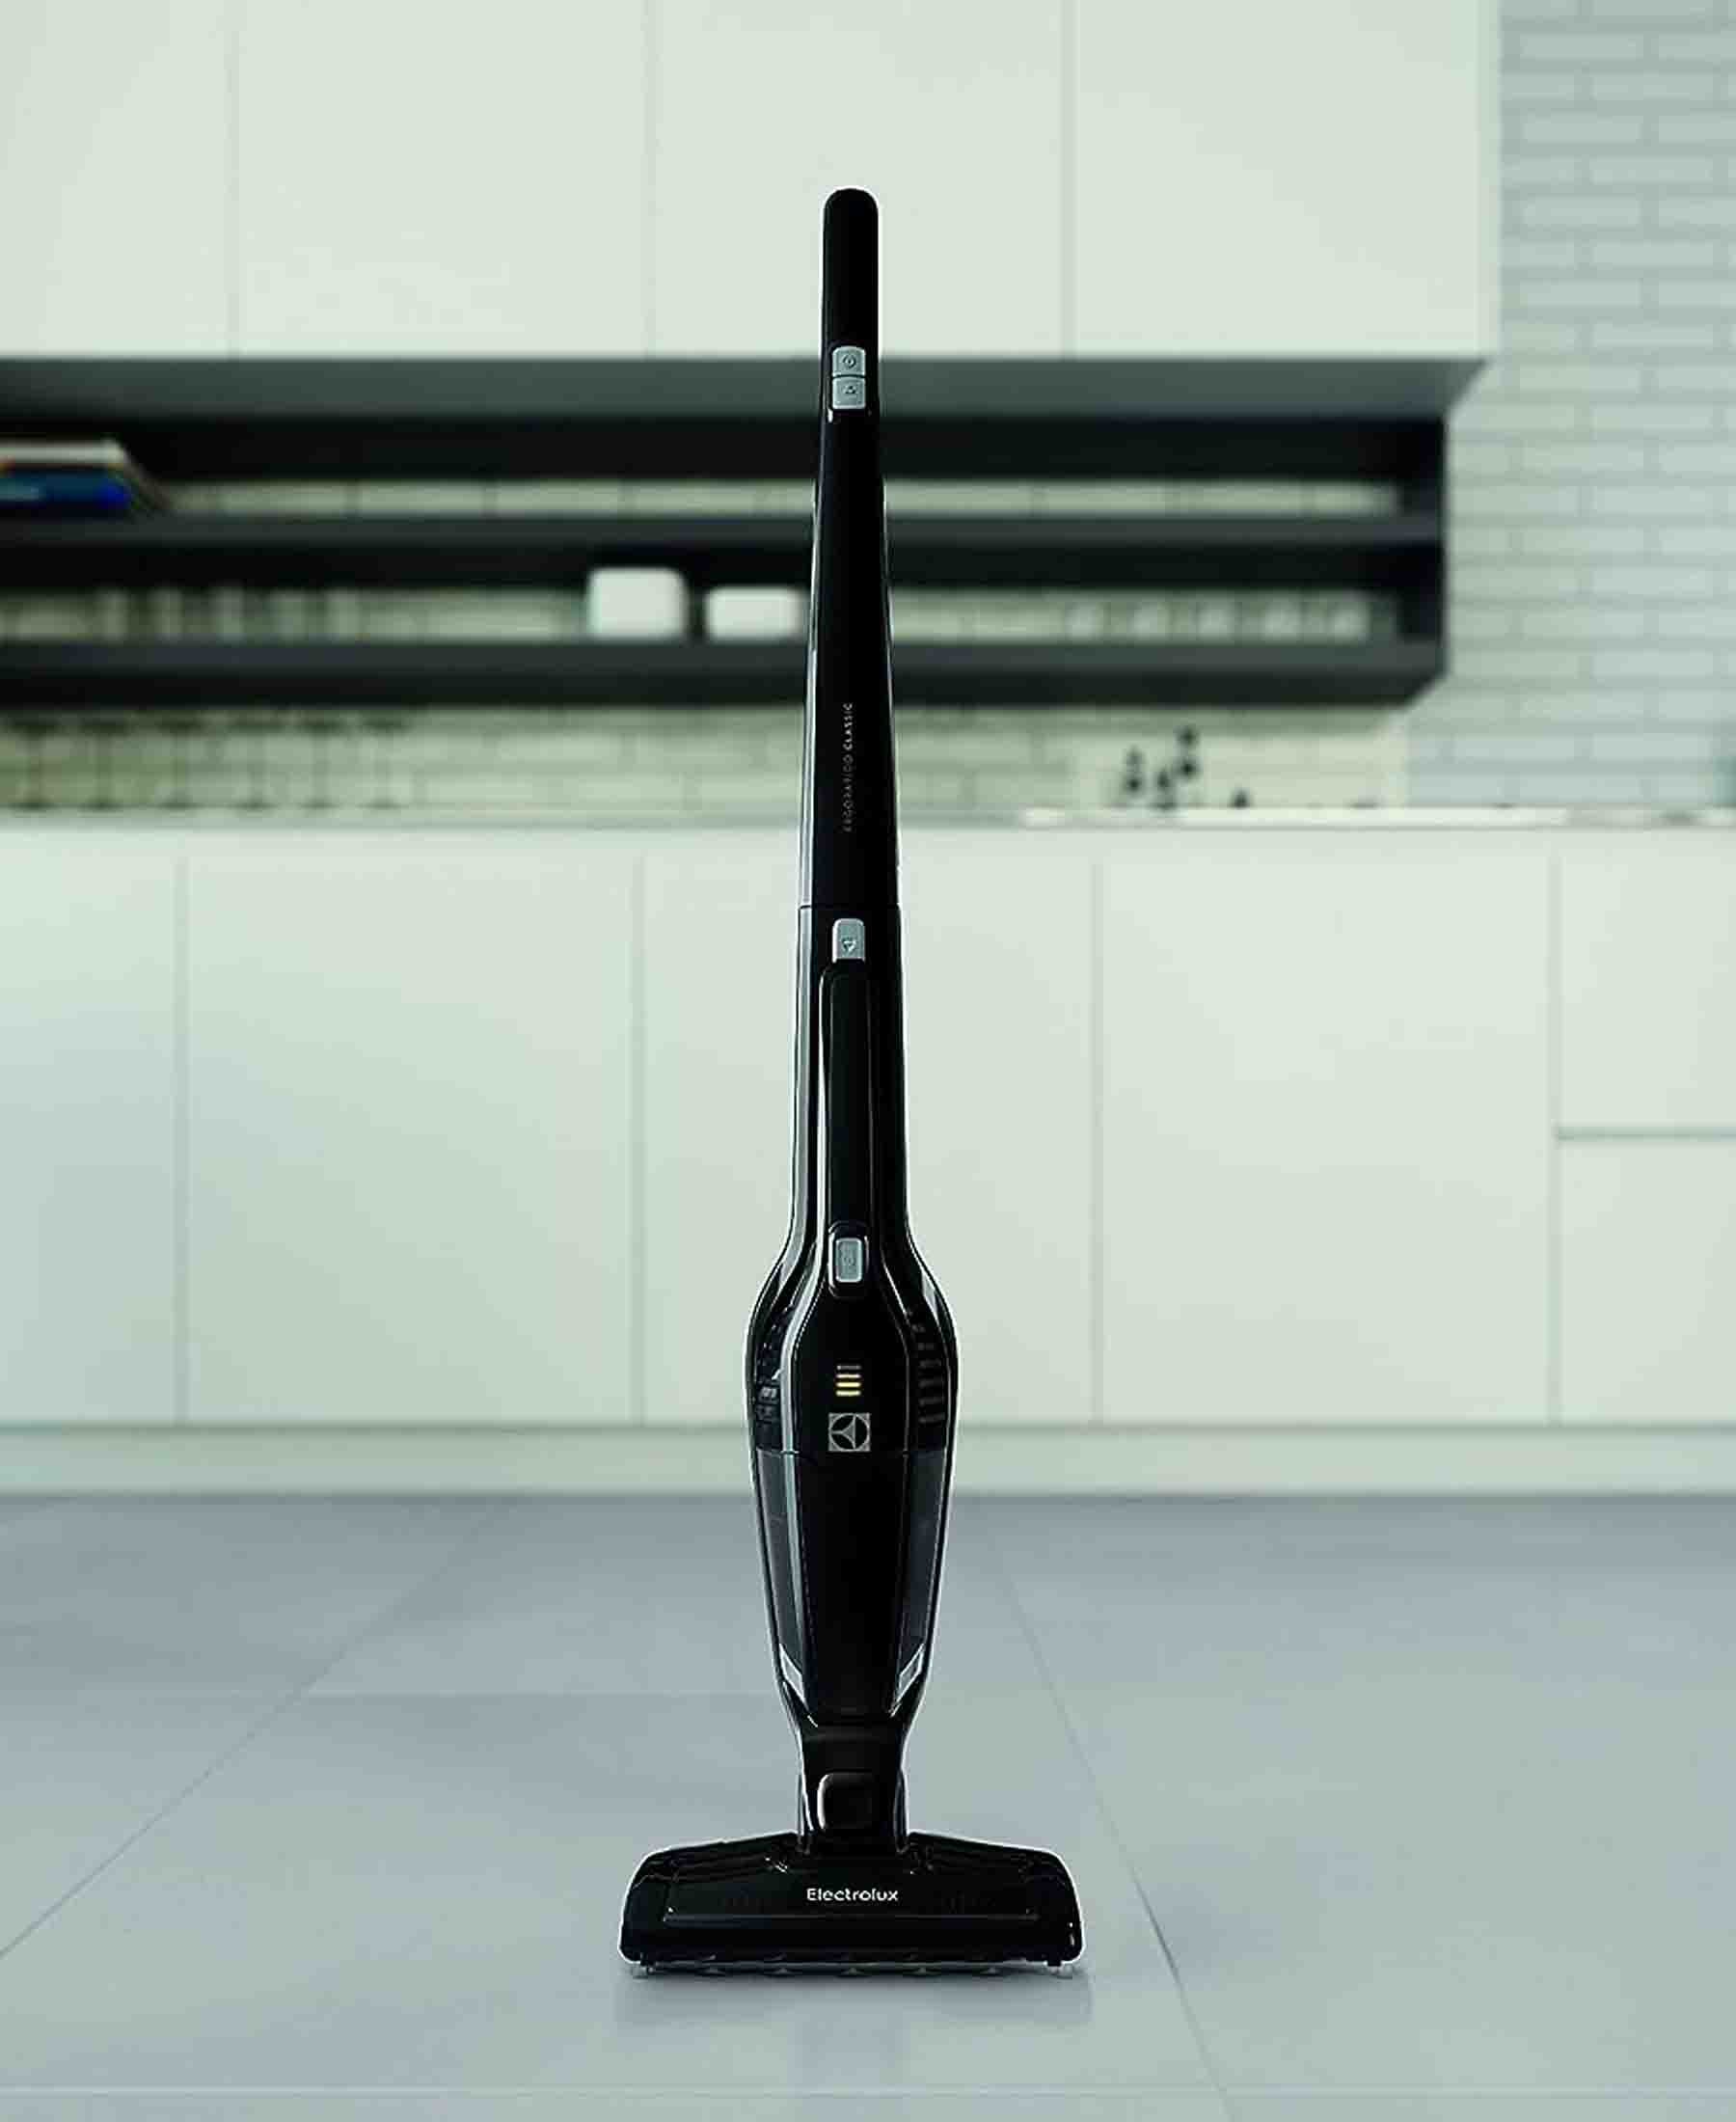 Electrolux Ergorapido Classic Cordless Vacuum Cleaner - Black